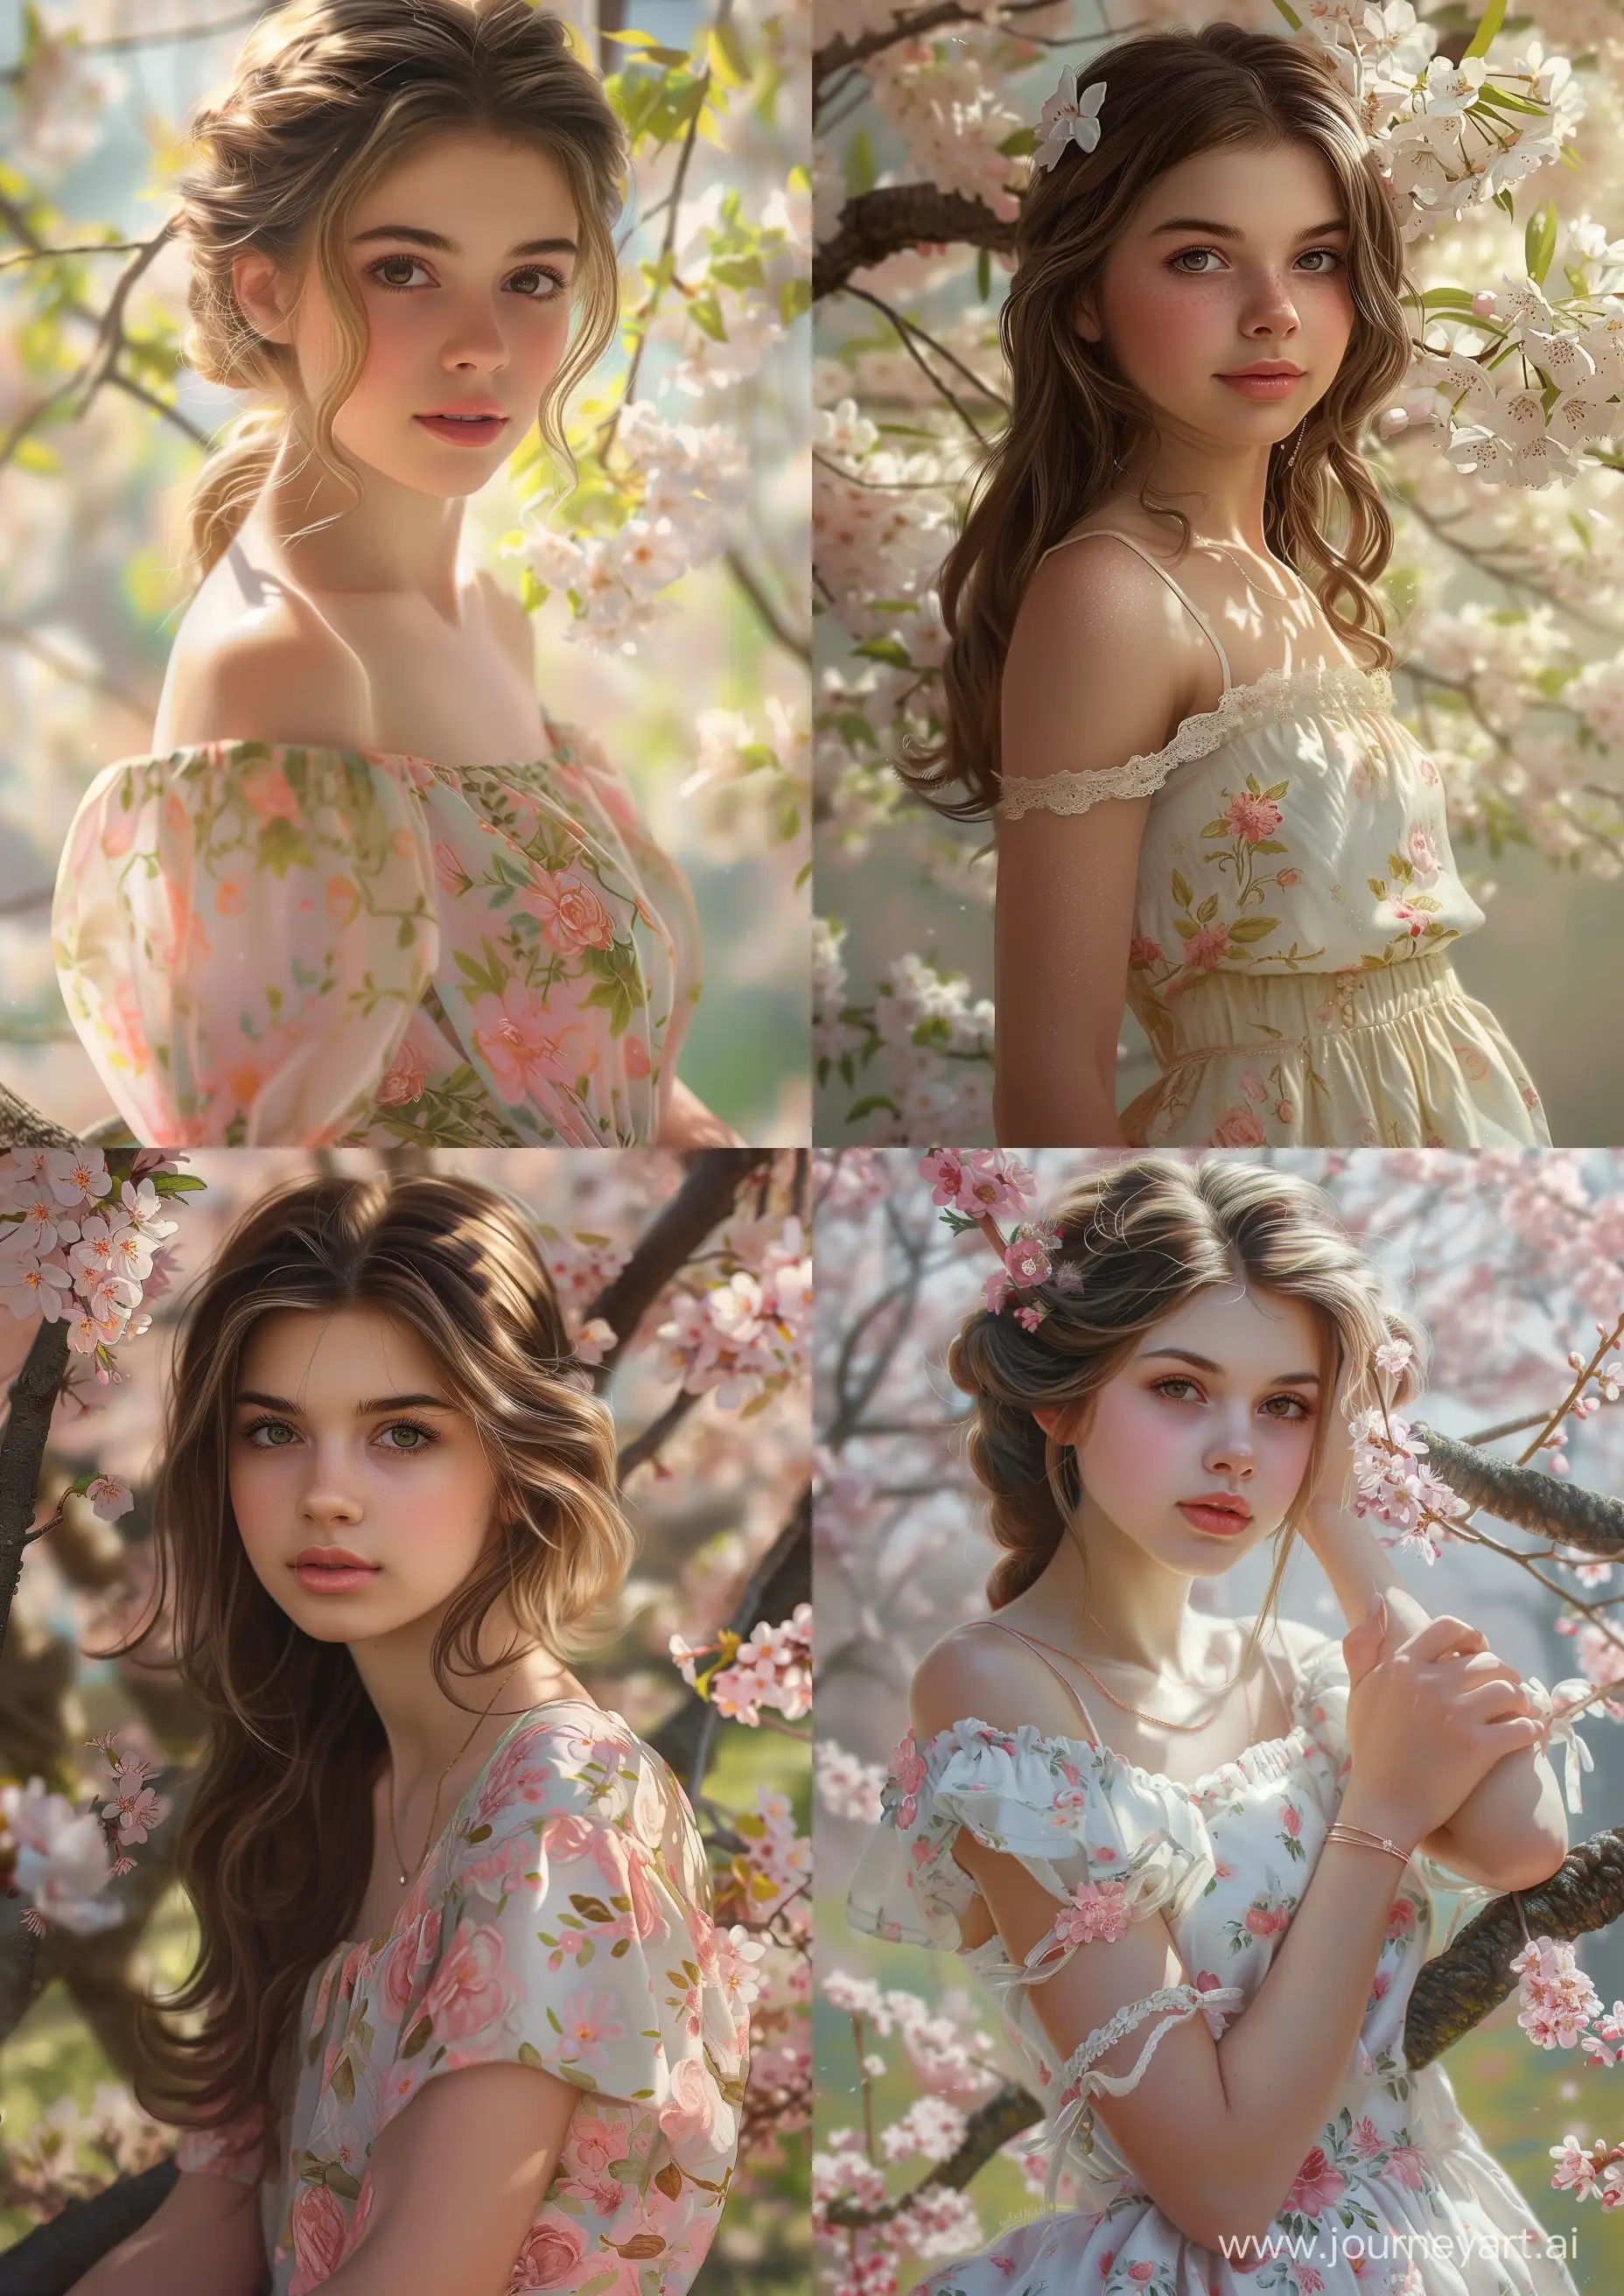 Красивая девушка 17 лет в платье из весны, апрель, фотореализм, цифровая живопись --ar 5:7